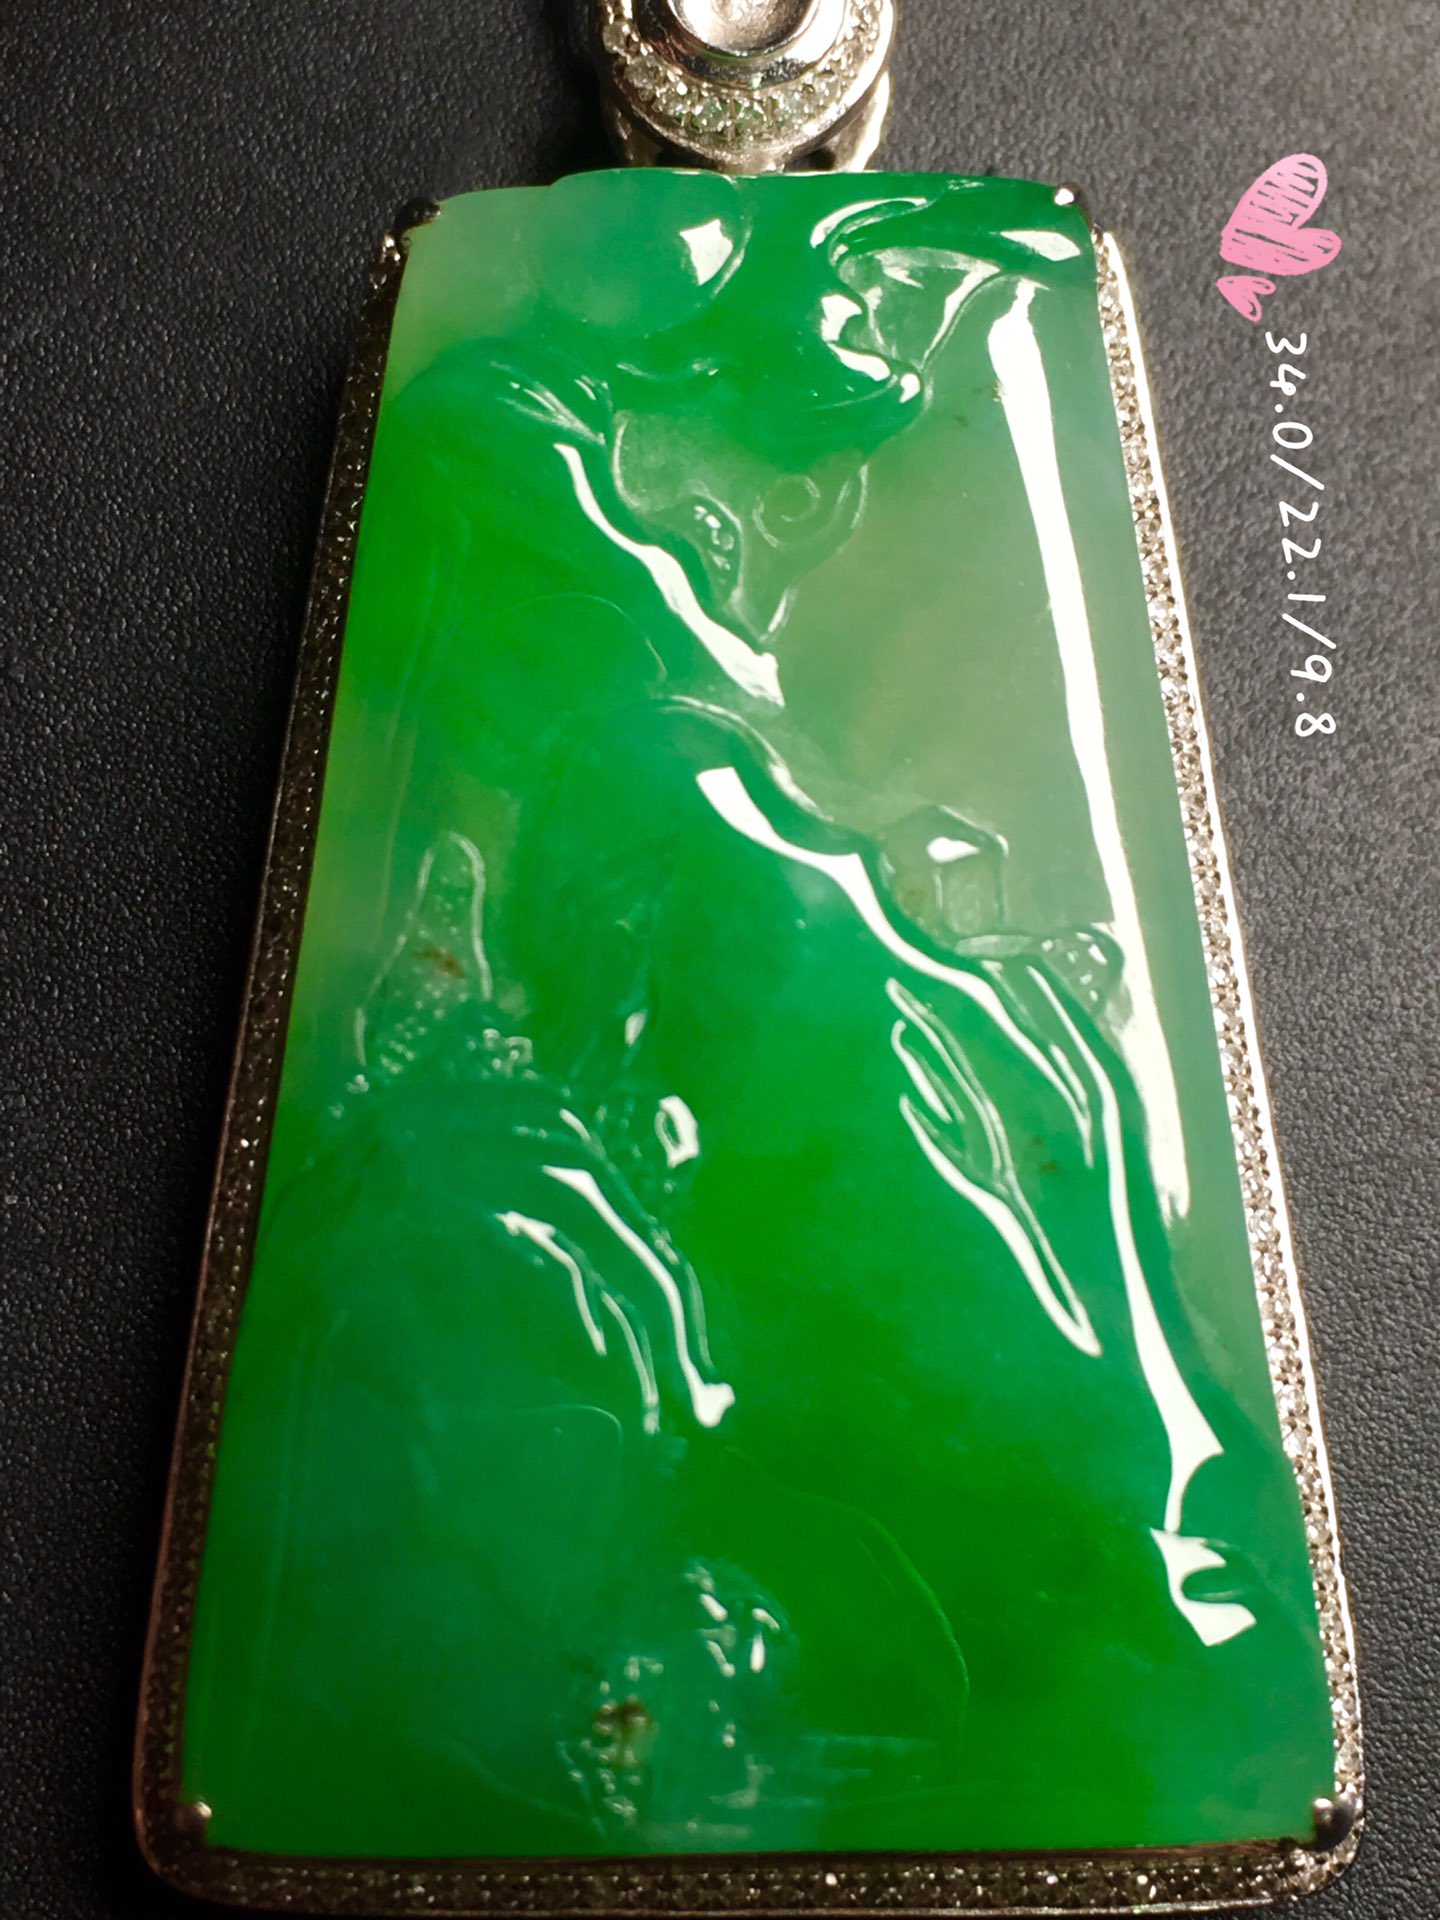 【冰阳绿，山水牌】水润通透，玉质细腻，冰绿冰透，完美无暇，18k金奢华钻石镶嵌